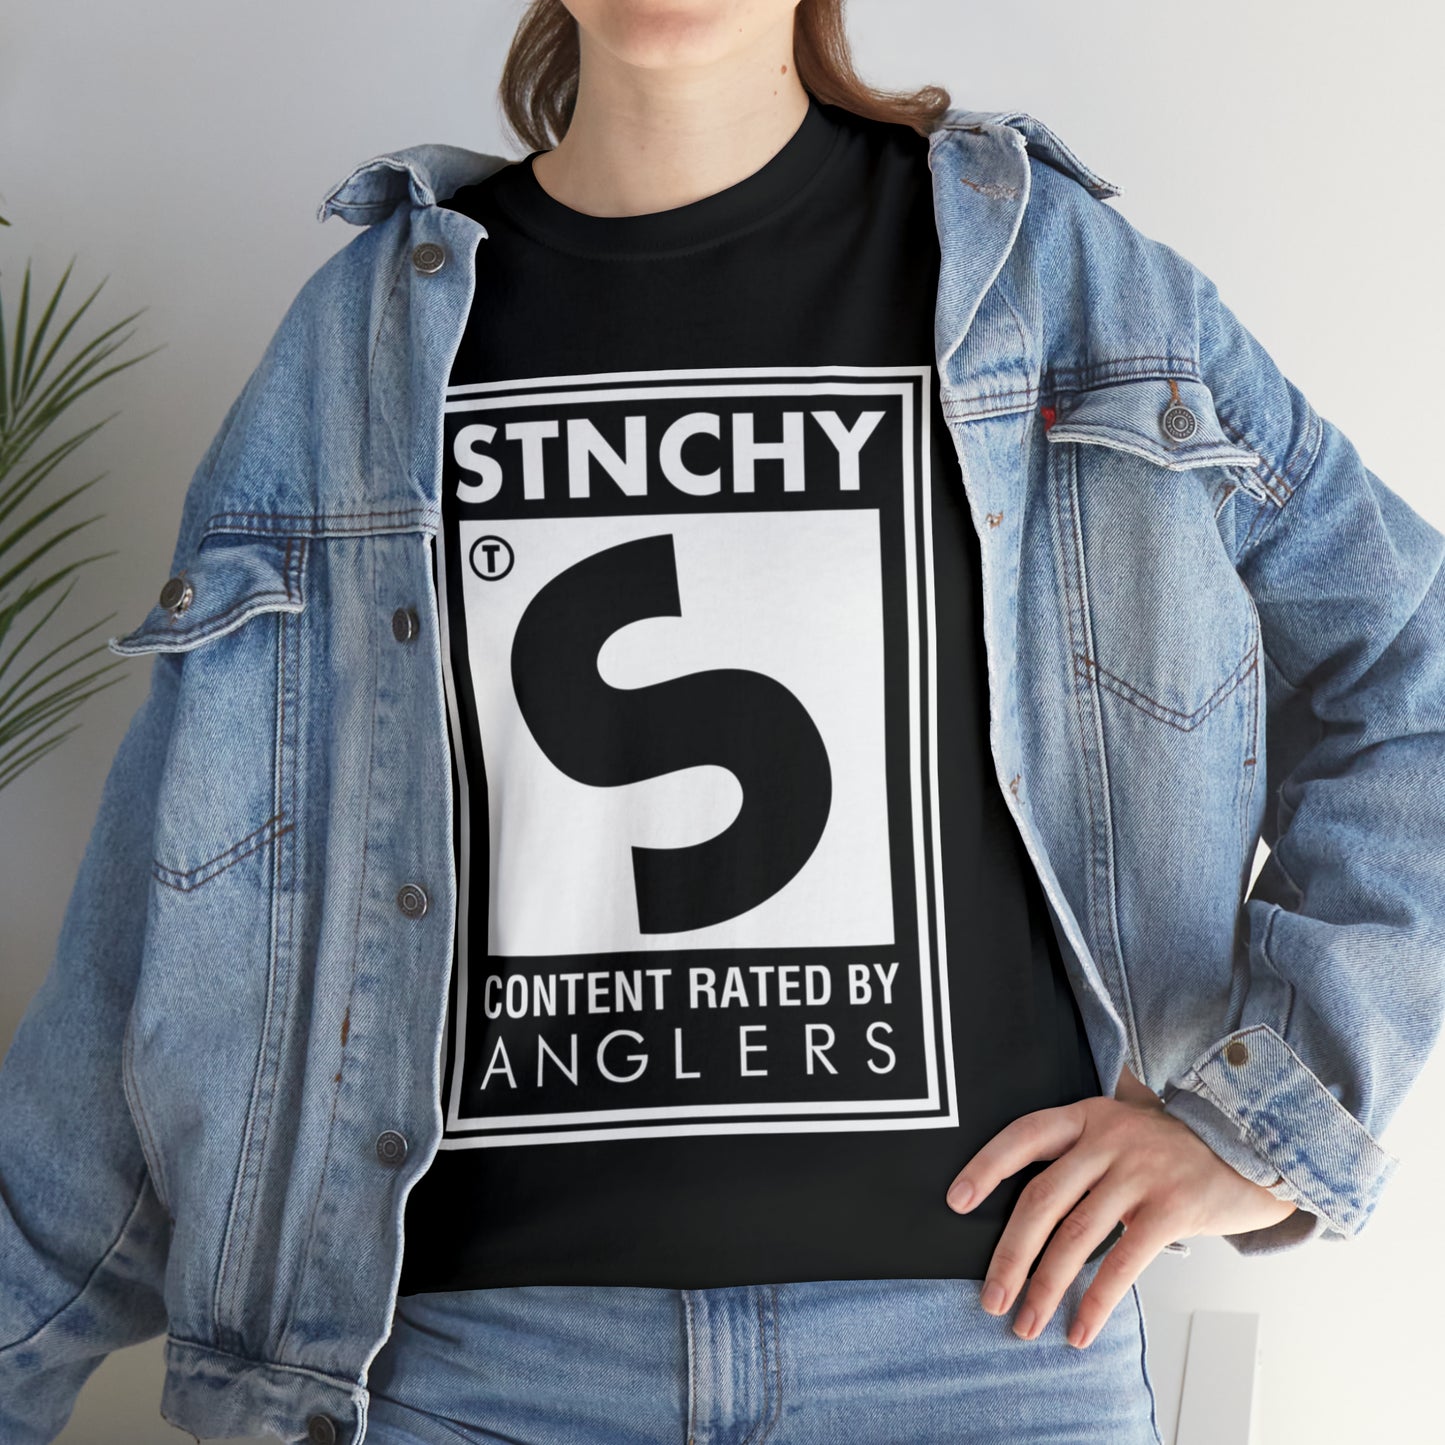 Stnchy Original T-Shirt